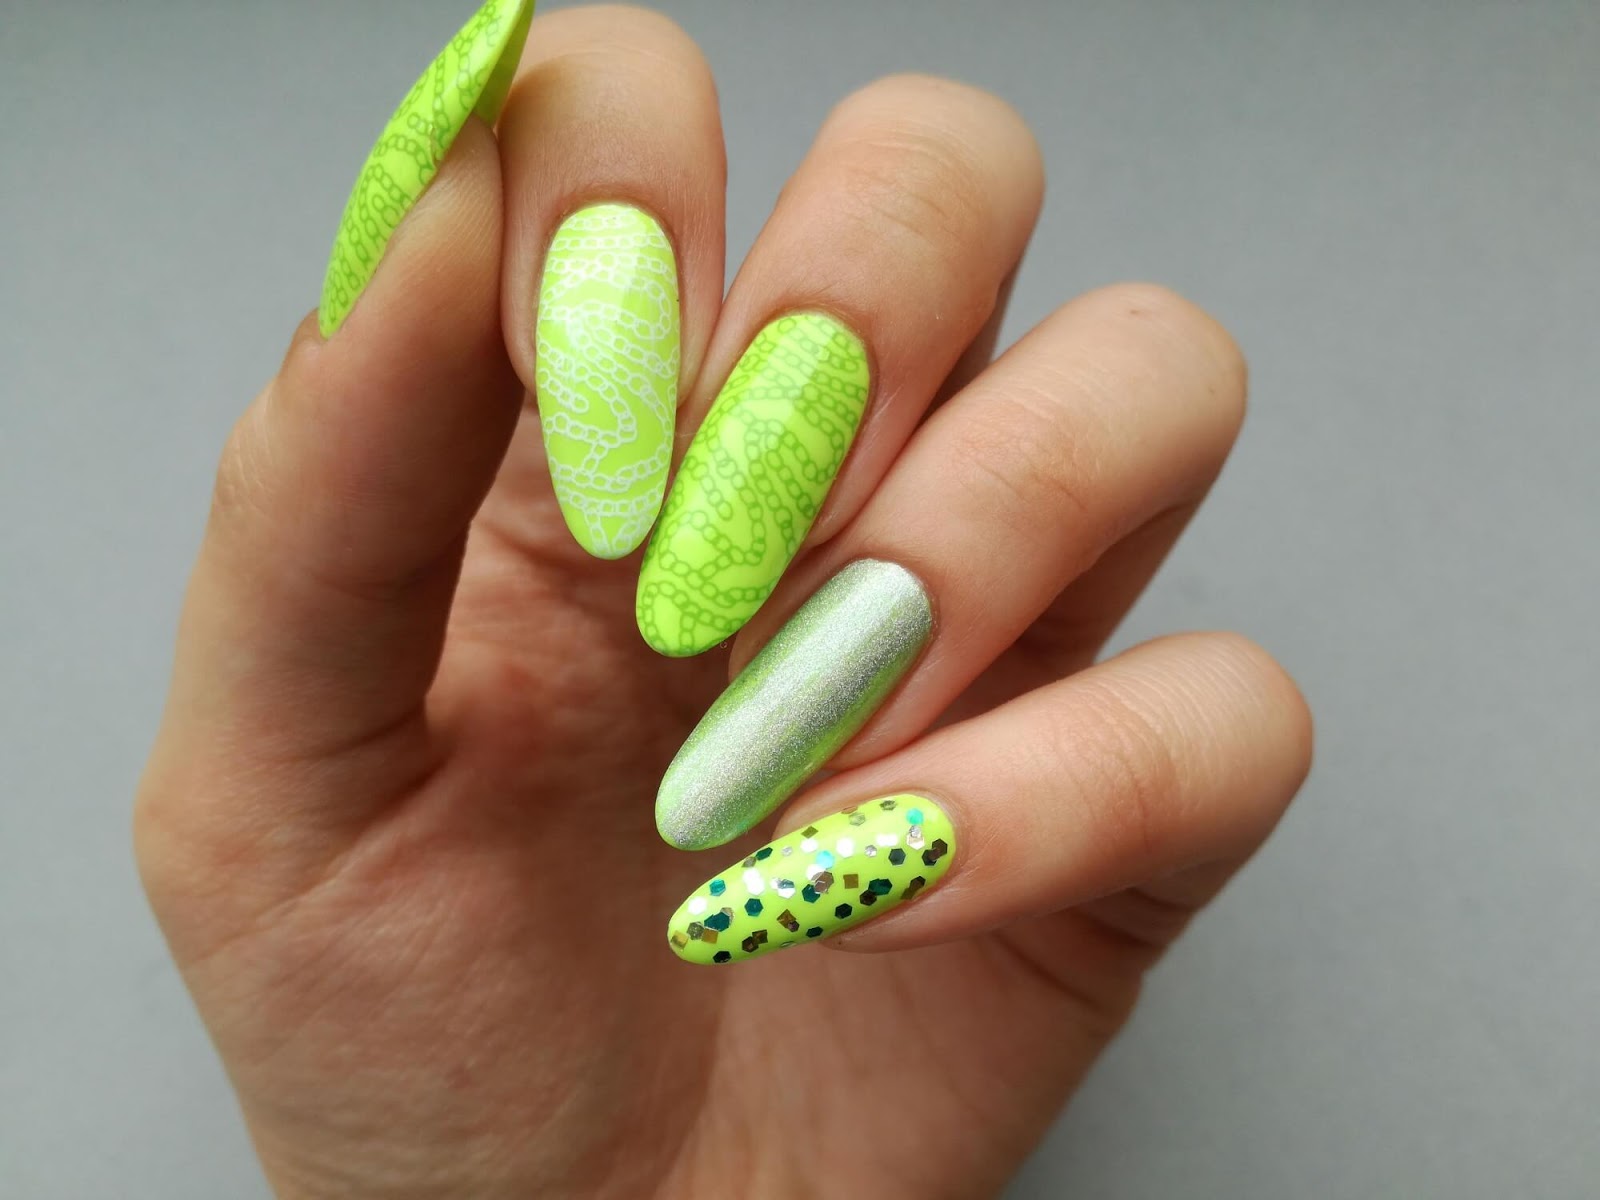 Neonowy manicure - naprawdę odblaskowe paznokcie